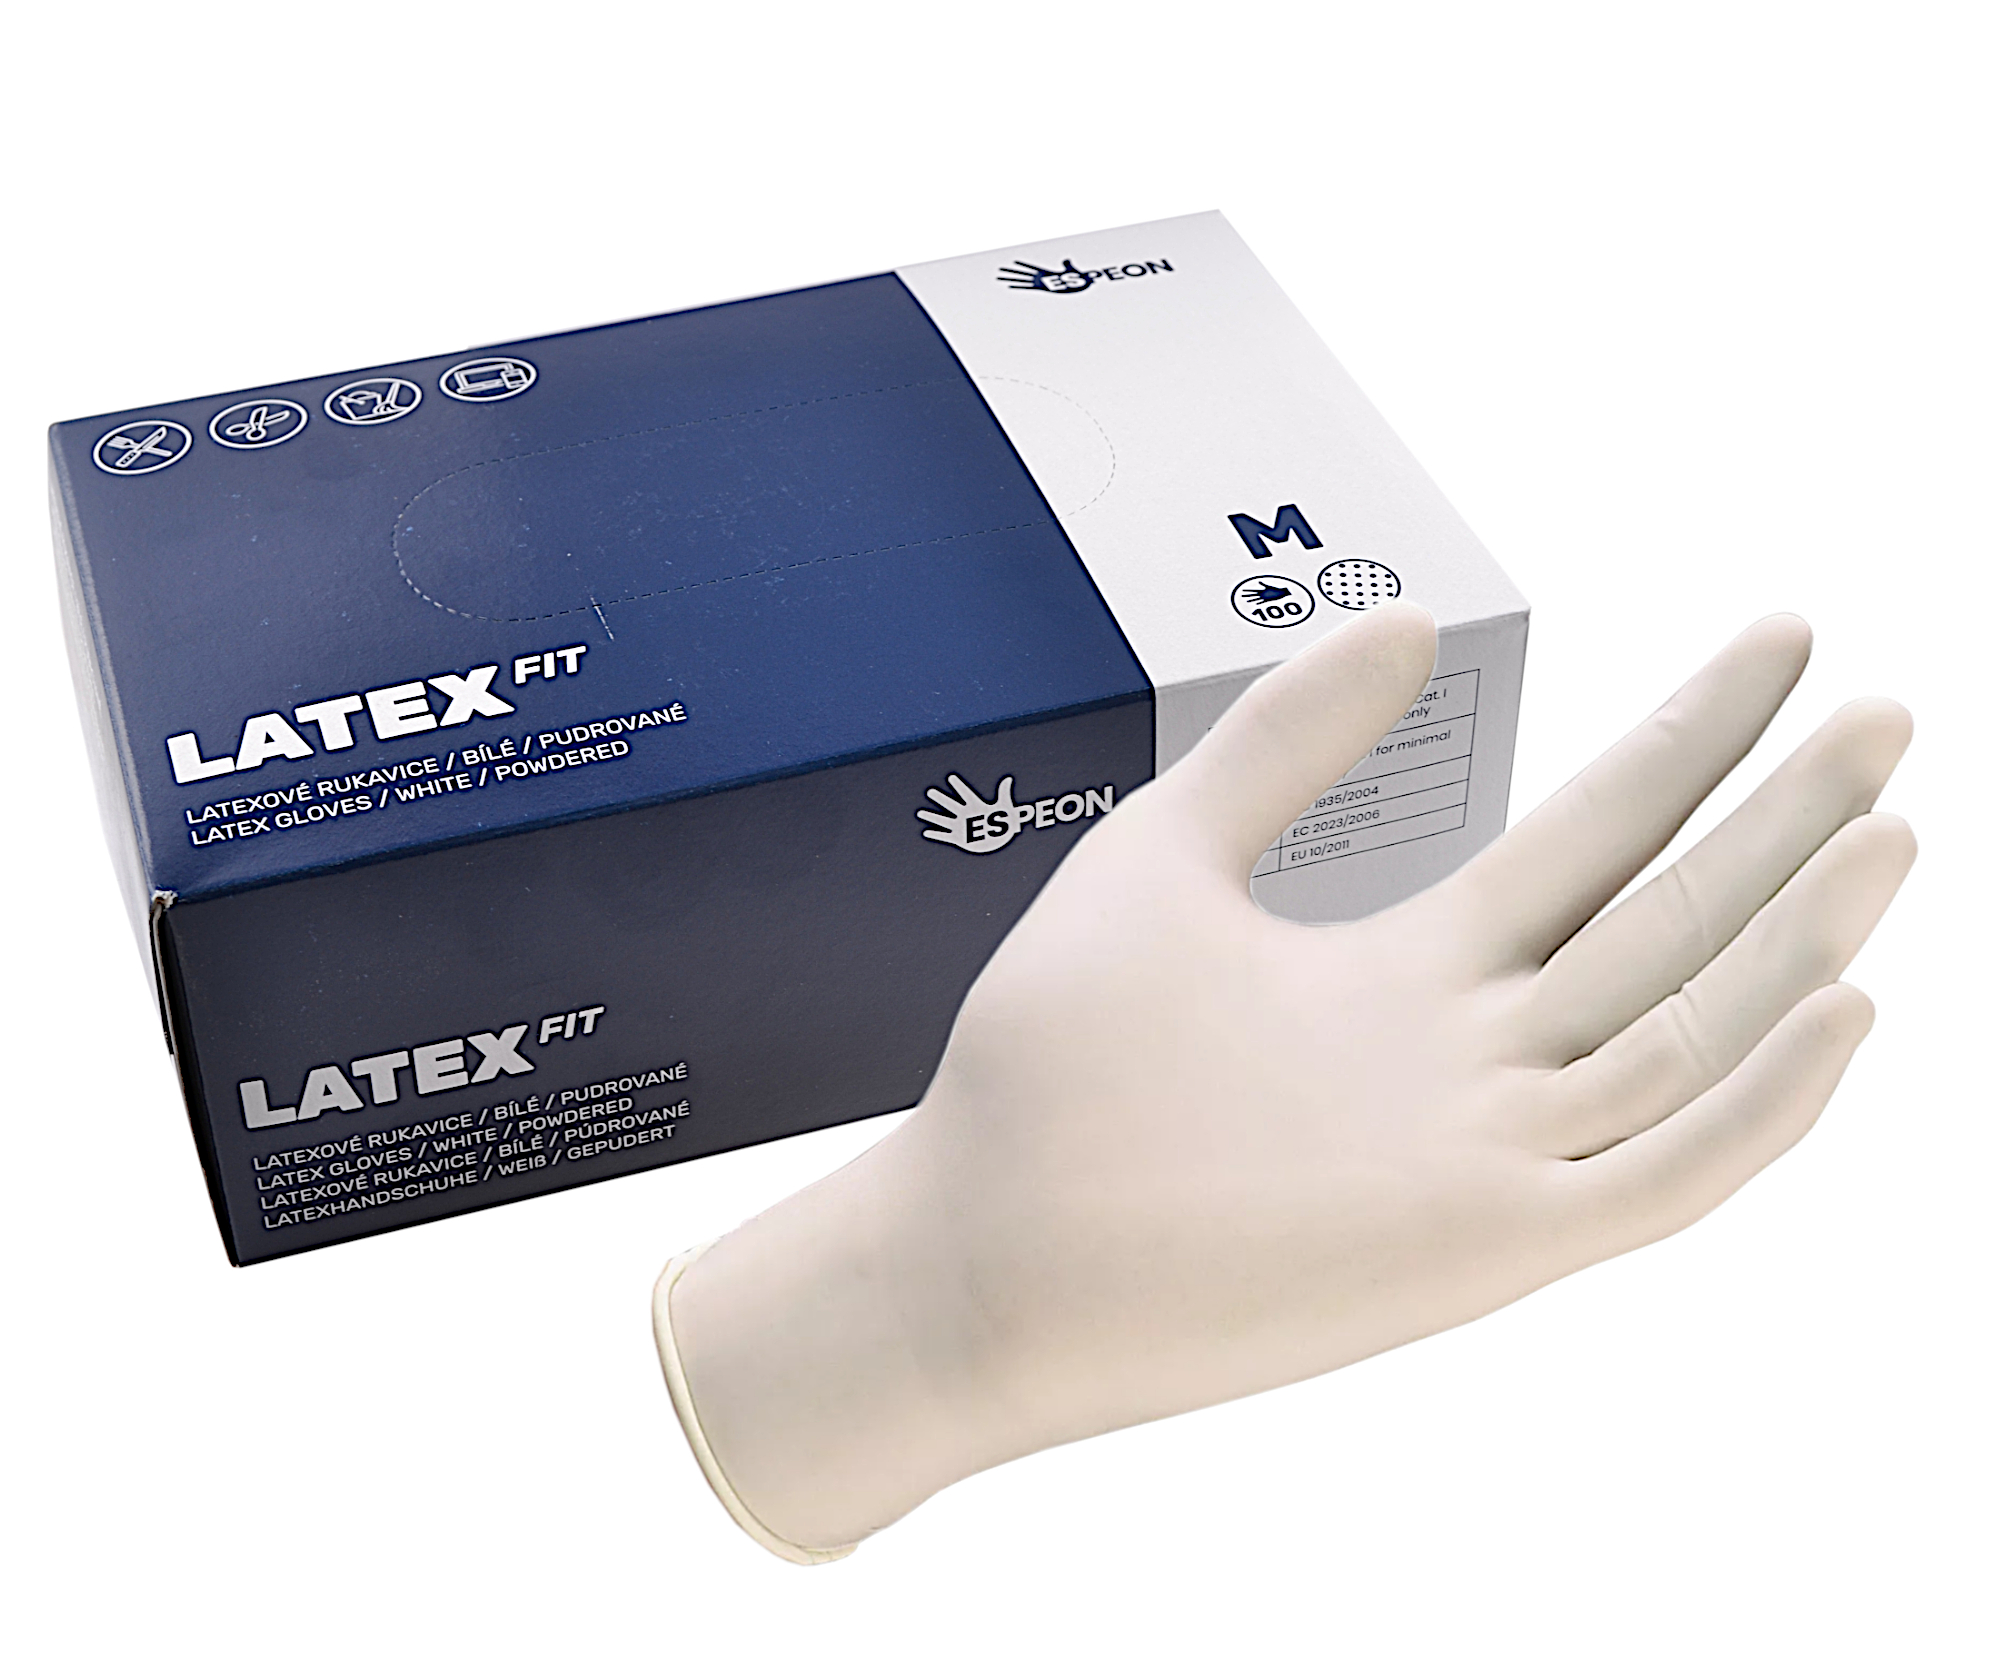 Latexové rukavice pro kadeřníky Latex Fit - 100 kusů, vel. M (X 26 M) - Subrina Professional + dárek zdarma